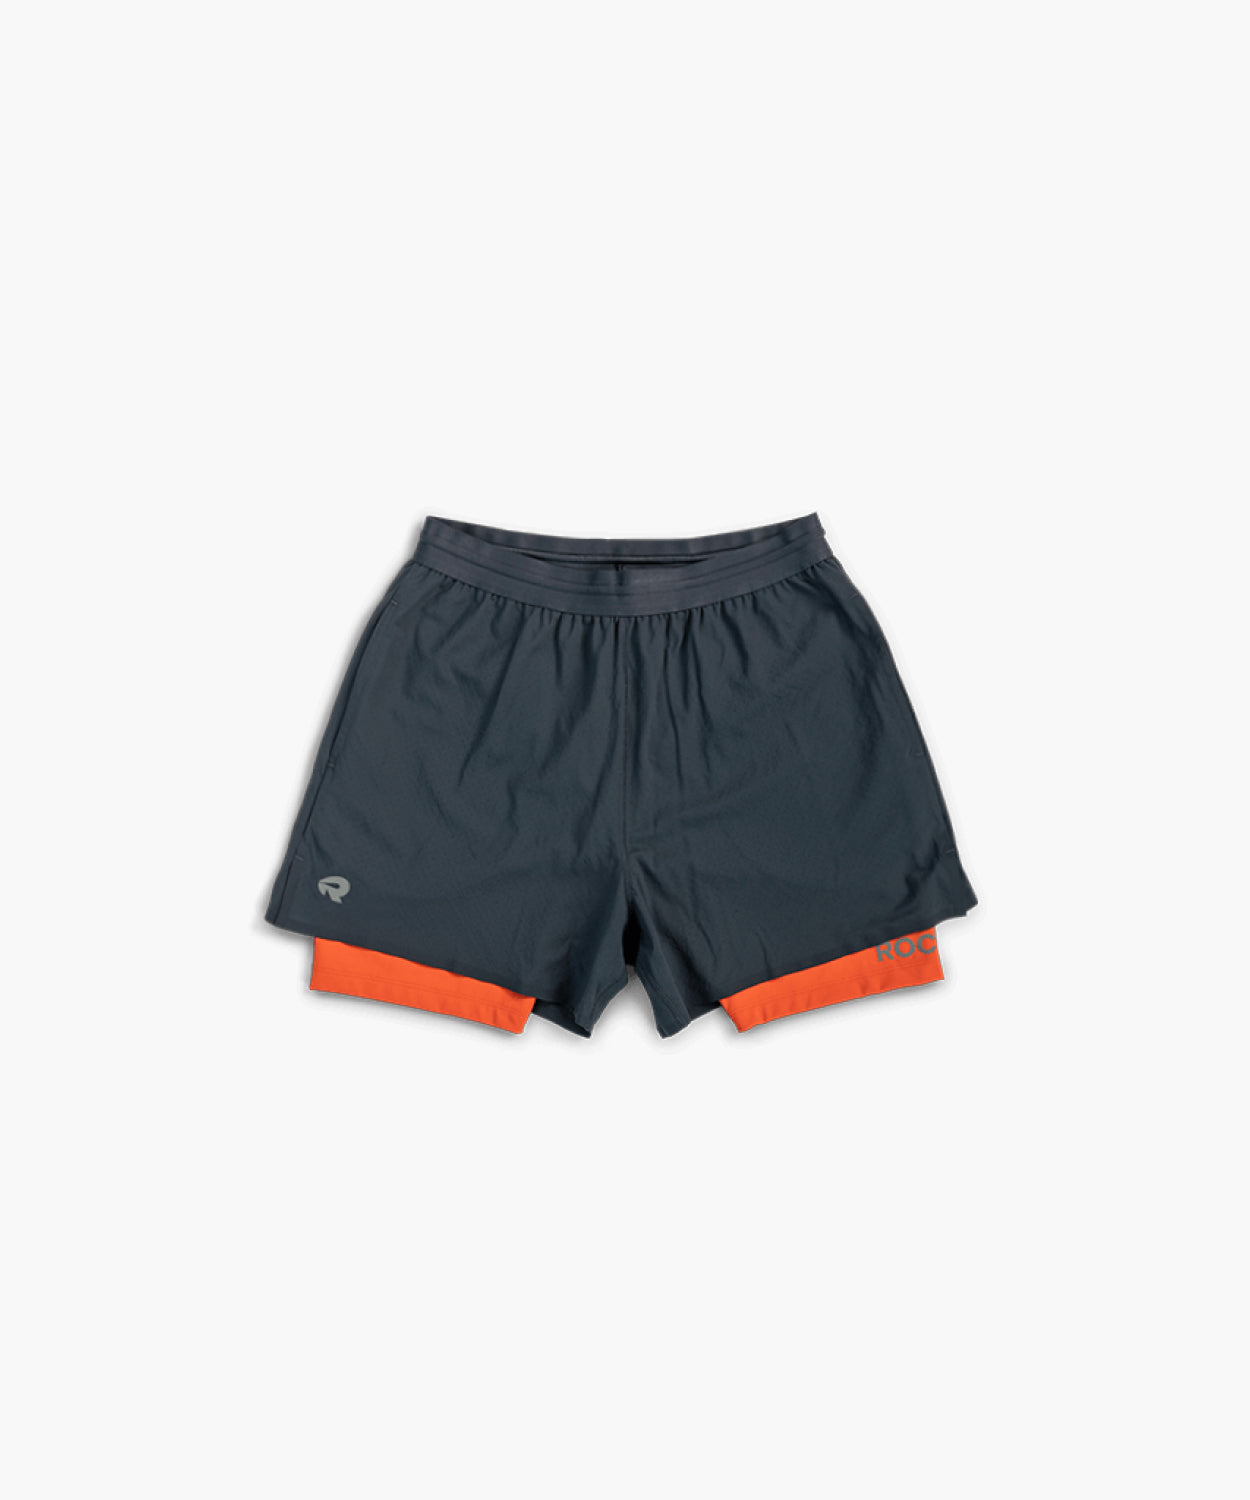 Men's 2-In-1 Shorts